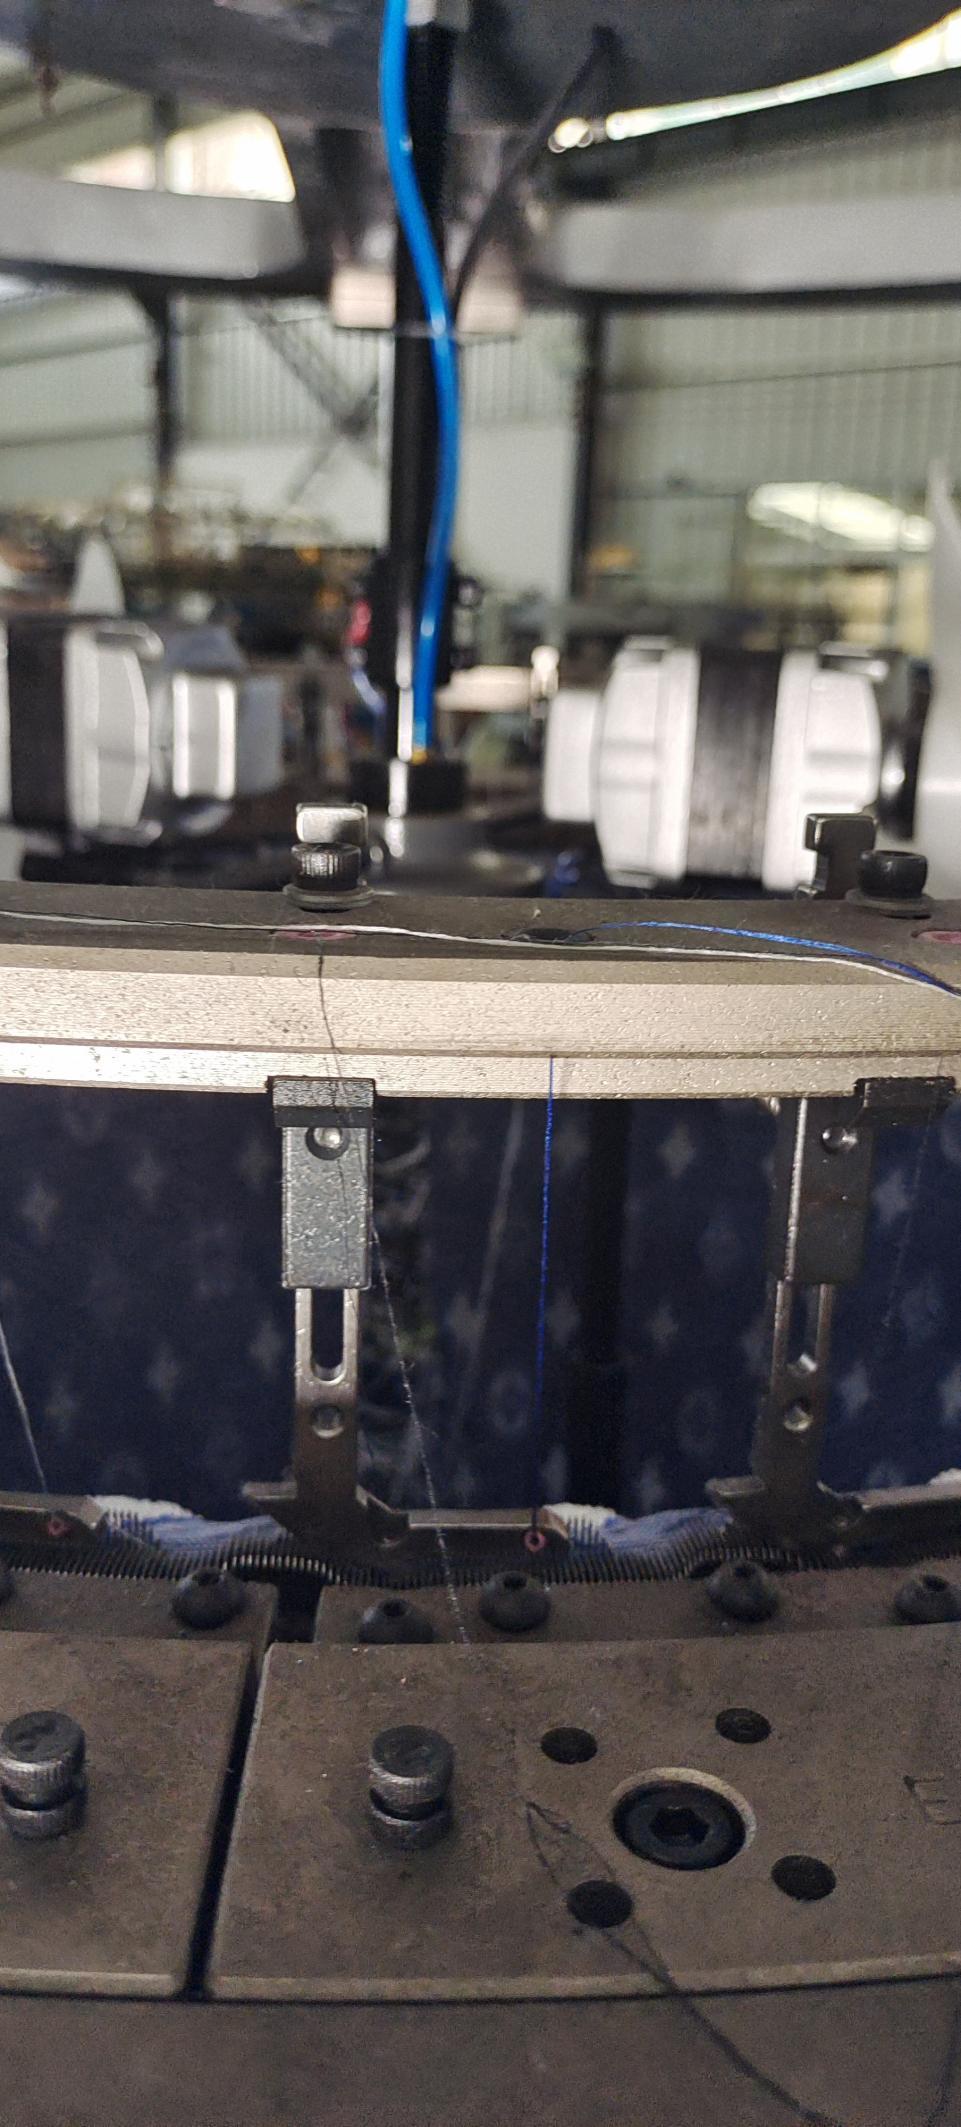 Бір-Джерси-компьютерленген-жаквард-дөңгелек-тоқыма-машинасына арналған жіп-нұсқаулық